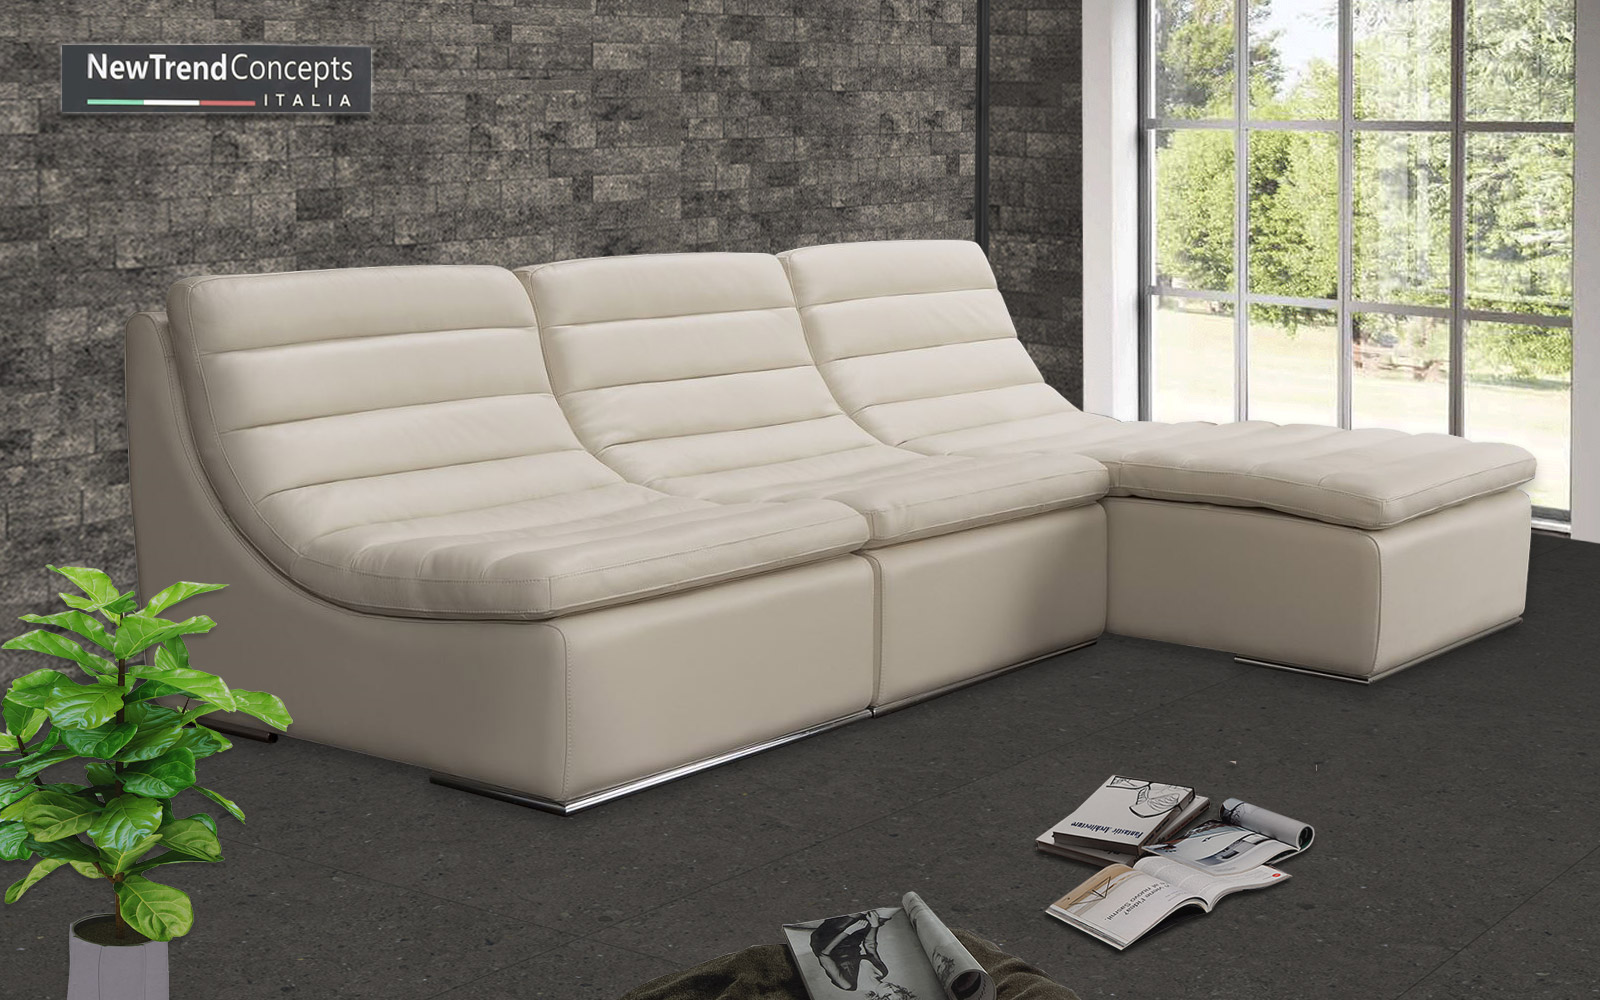 Tổng hợp các mẫu sofa cho căn hộ nhỏ diện tích 25m2 - Ảnh 8